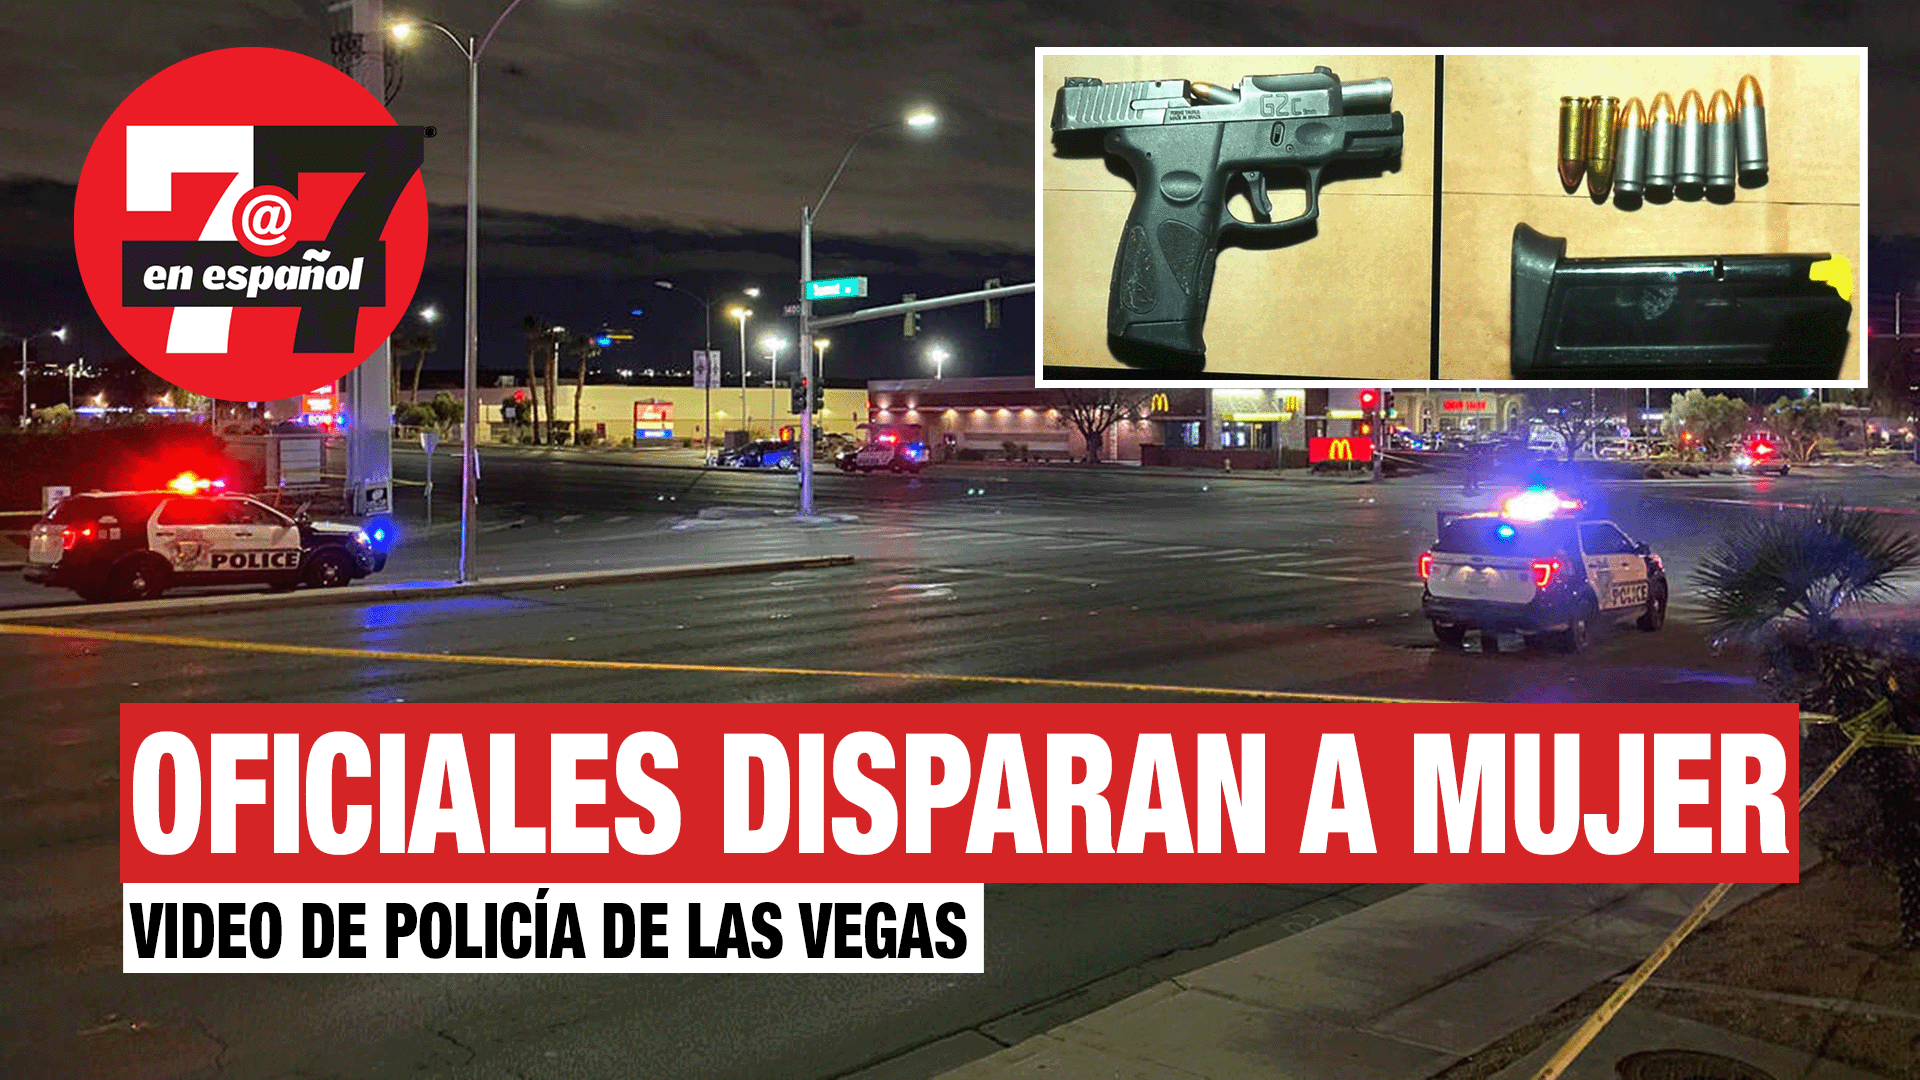 Noticias de Las Vegas | Video muestra a oficiales disparando a mujer